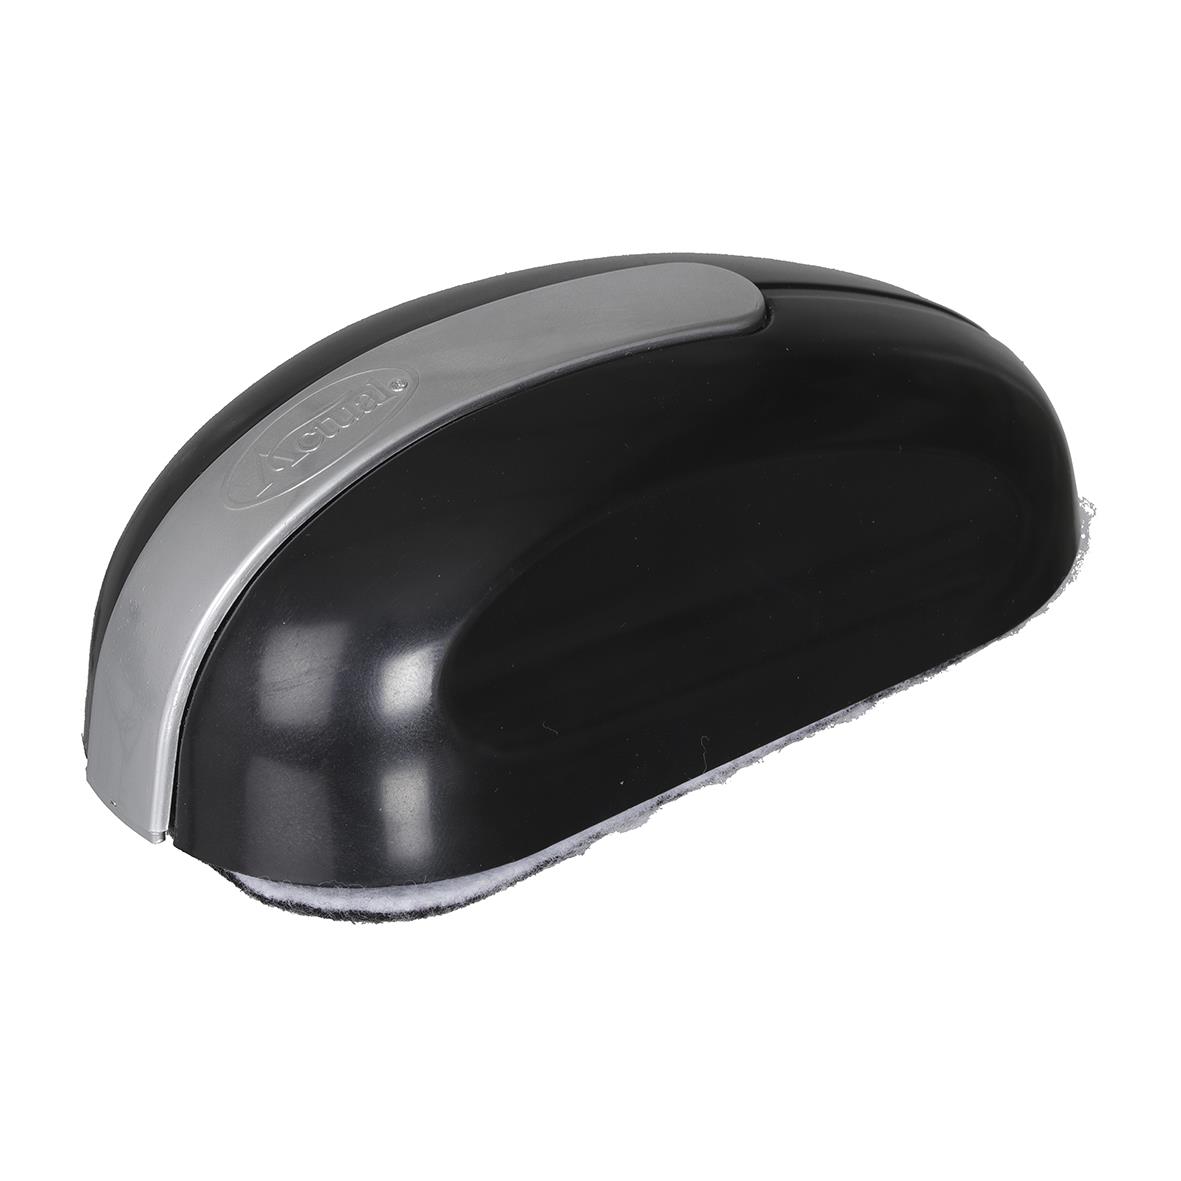 Tavelsudd Black Mouse Magnetisk Svart 12,7x5cm 75050099